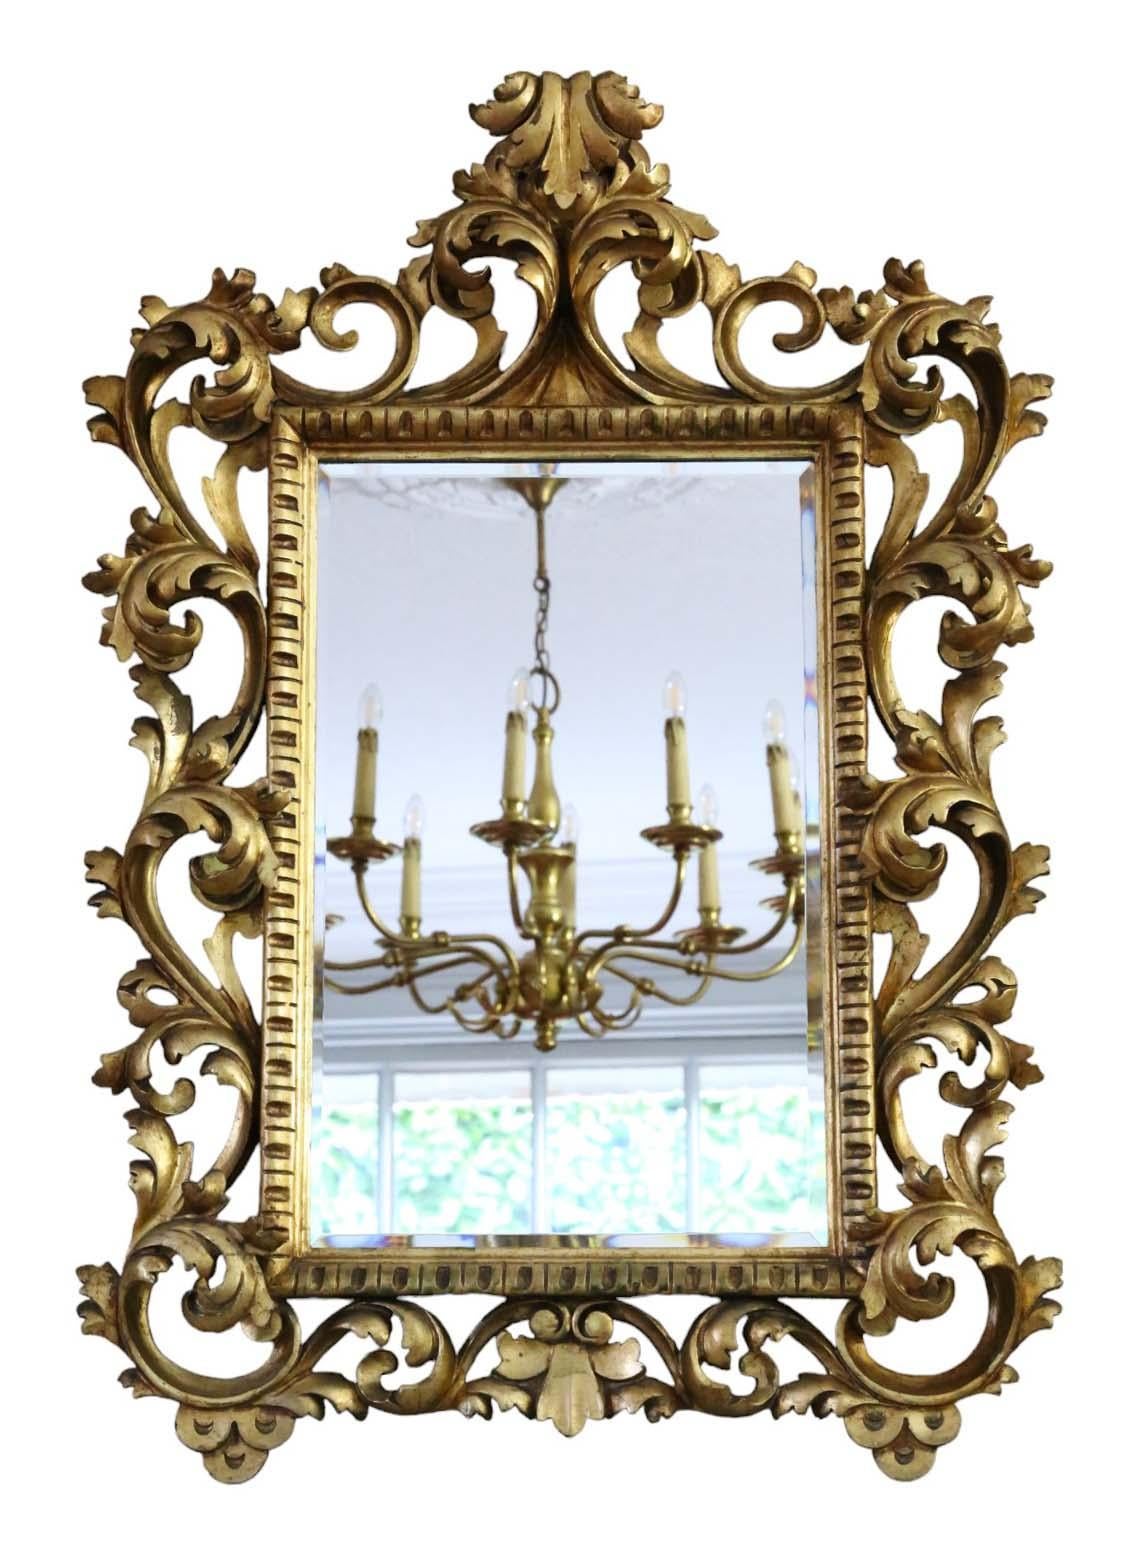 Antiker großer vergoldeter Wandspiegel aus dem 19. Jahrhundert, der sich durch seine hohe handwerkliche Qualität auszeichnet.

Dieser Spiegel bezaubert durch sein auffälliges Florentine-Design und verleiht jedem geeigneten Raum Charakter. Der Rahmen